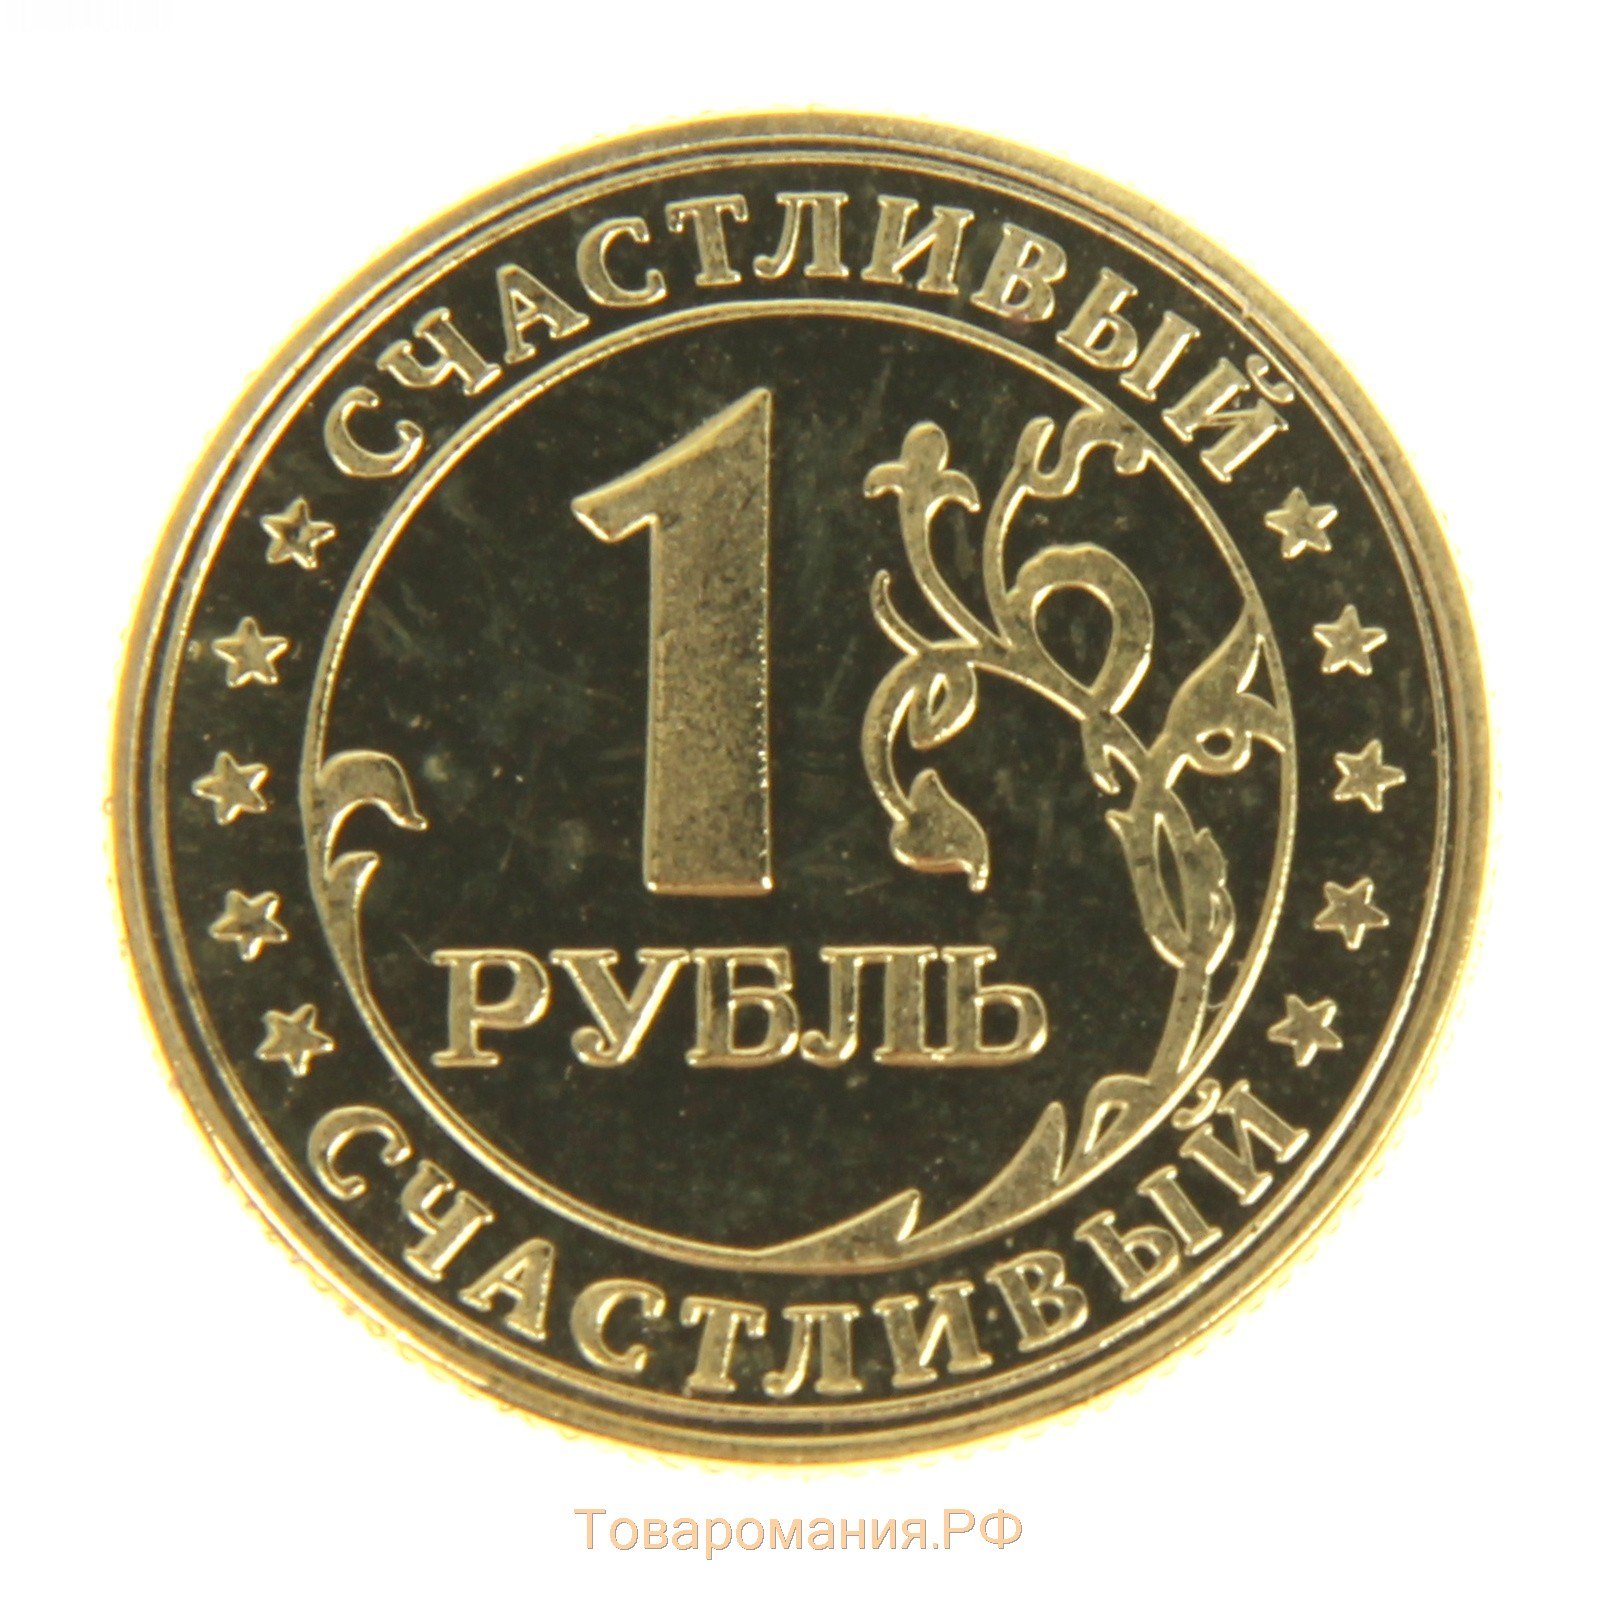 Рубль ис. Монеты. Изображение монетки. Рубль. Монеты для детей.